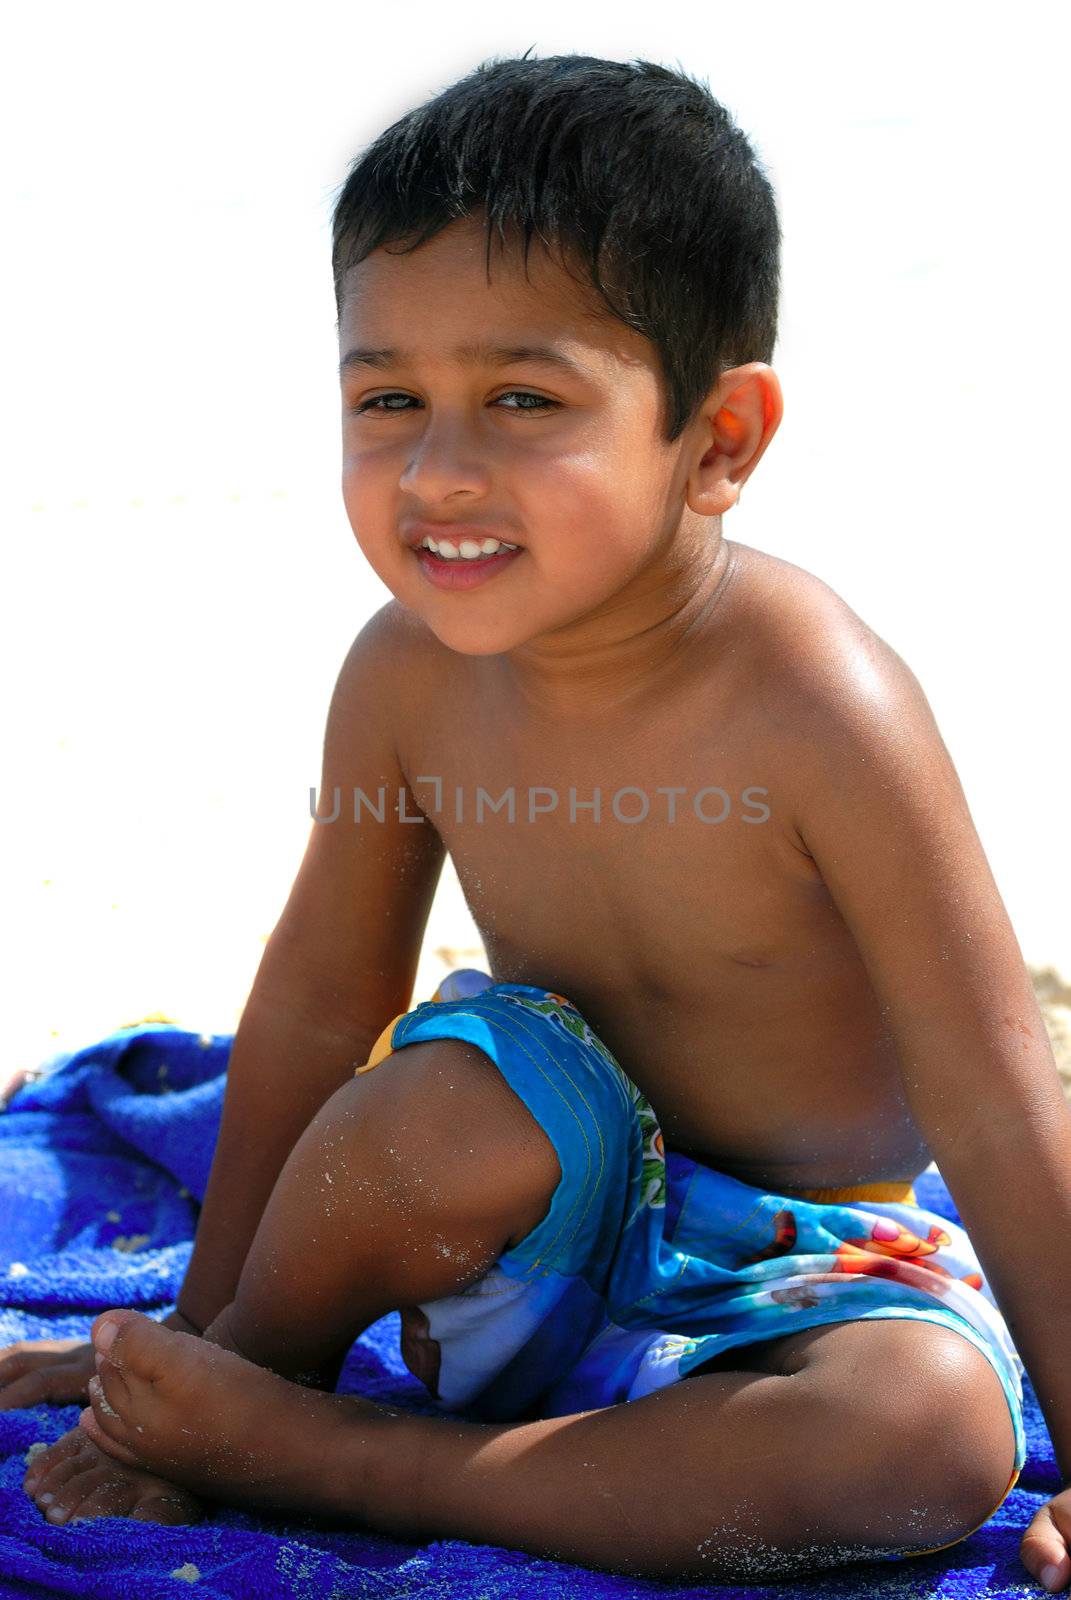 An handsome Indian kid having fun at a tropical beach